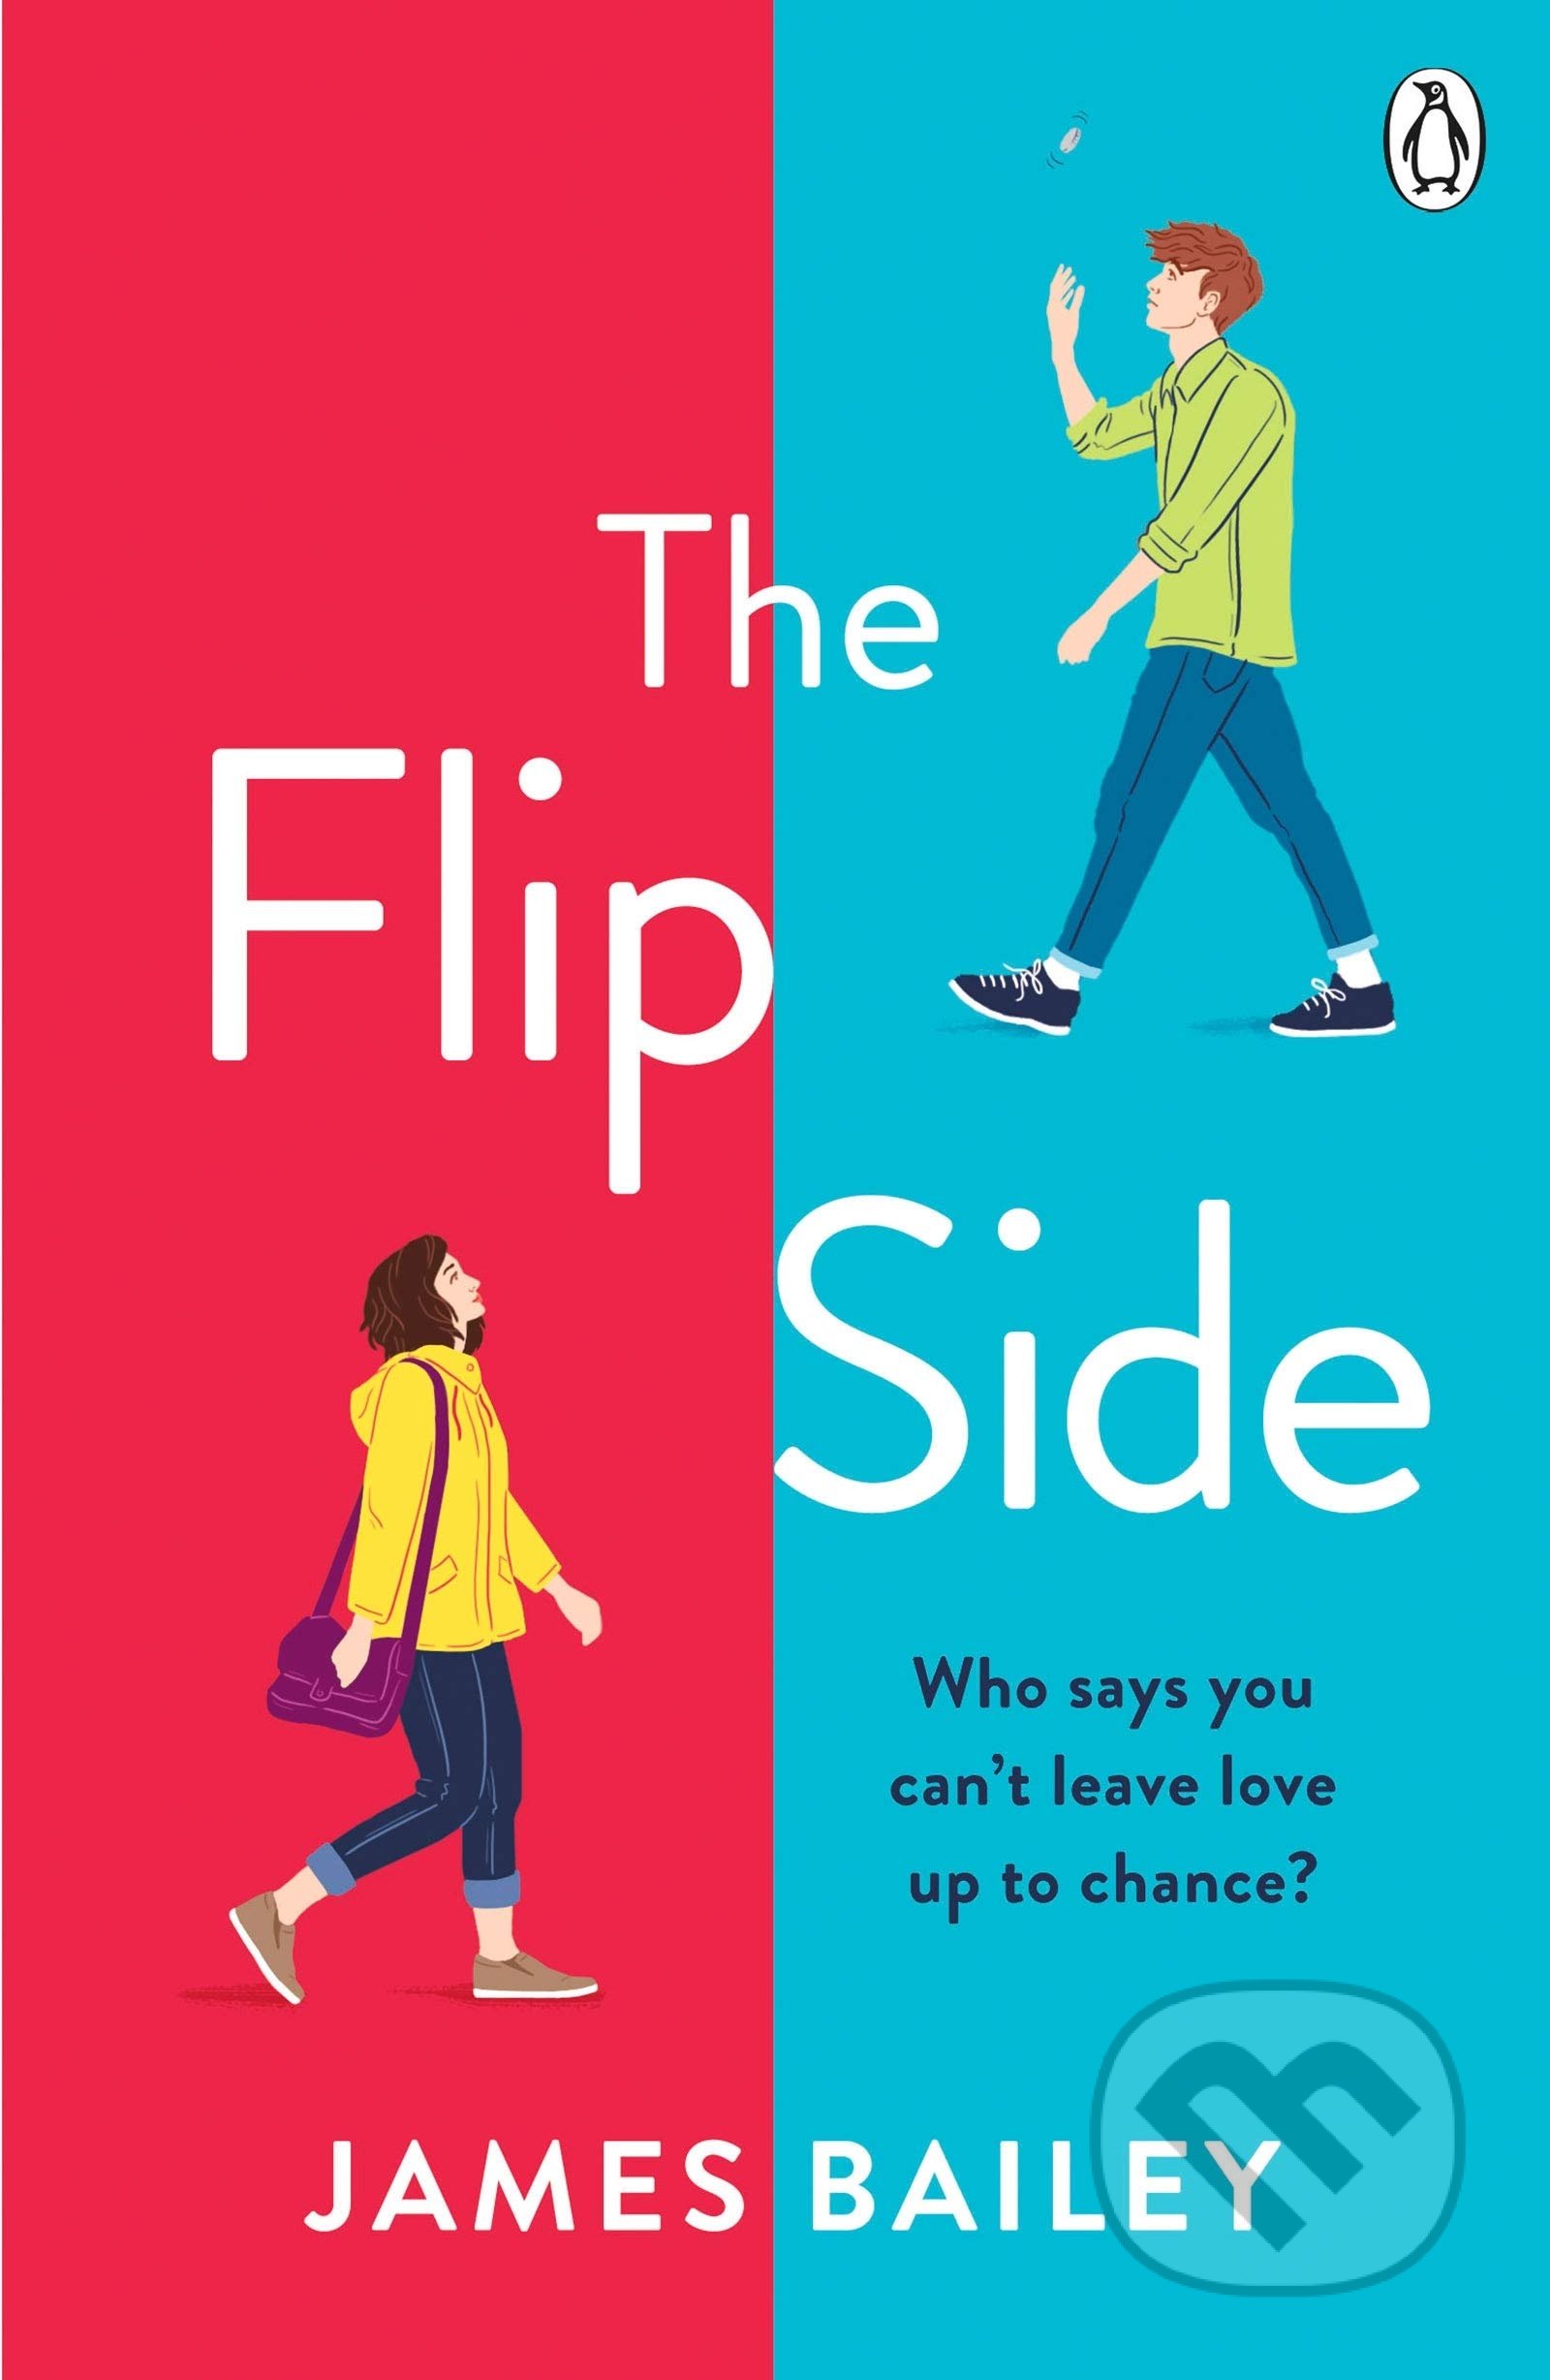 The Flip Side - James Bailey, Penguin Books, 2020